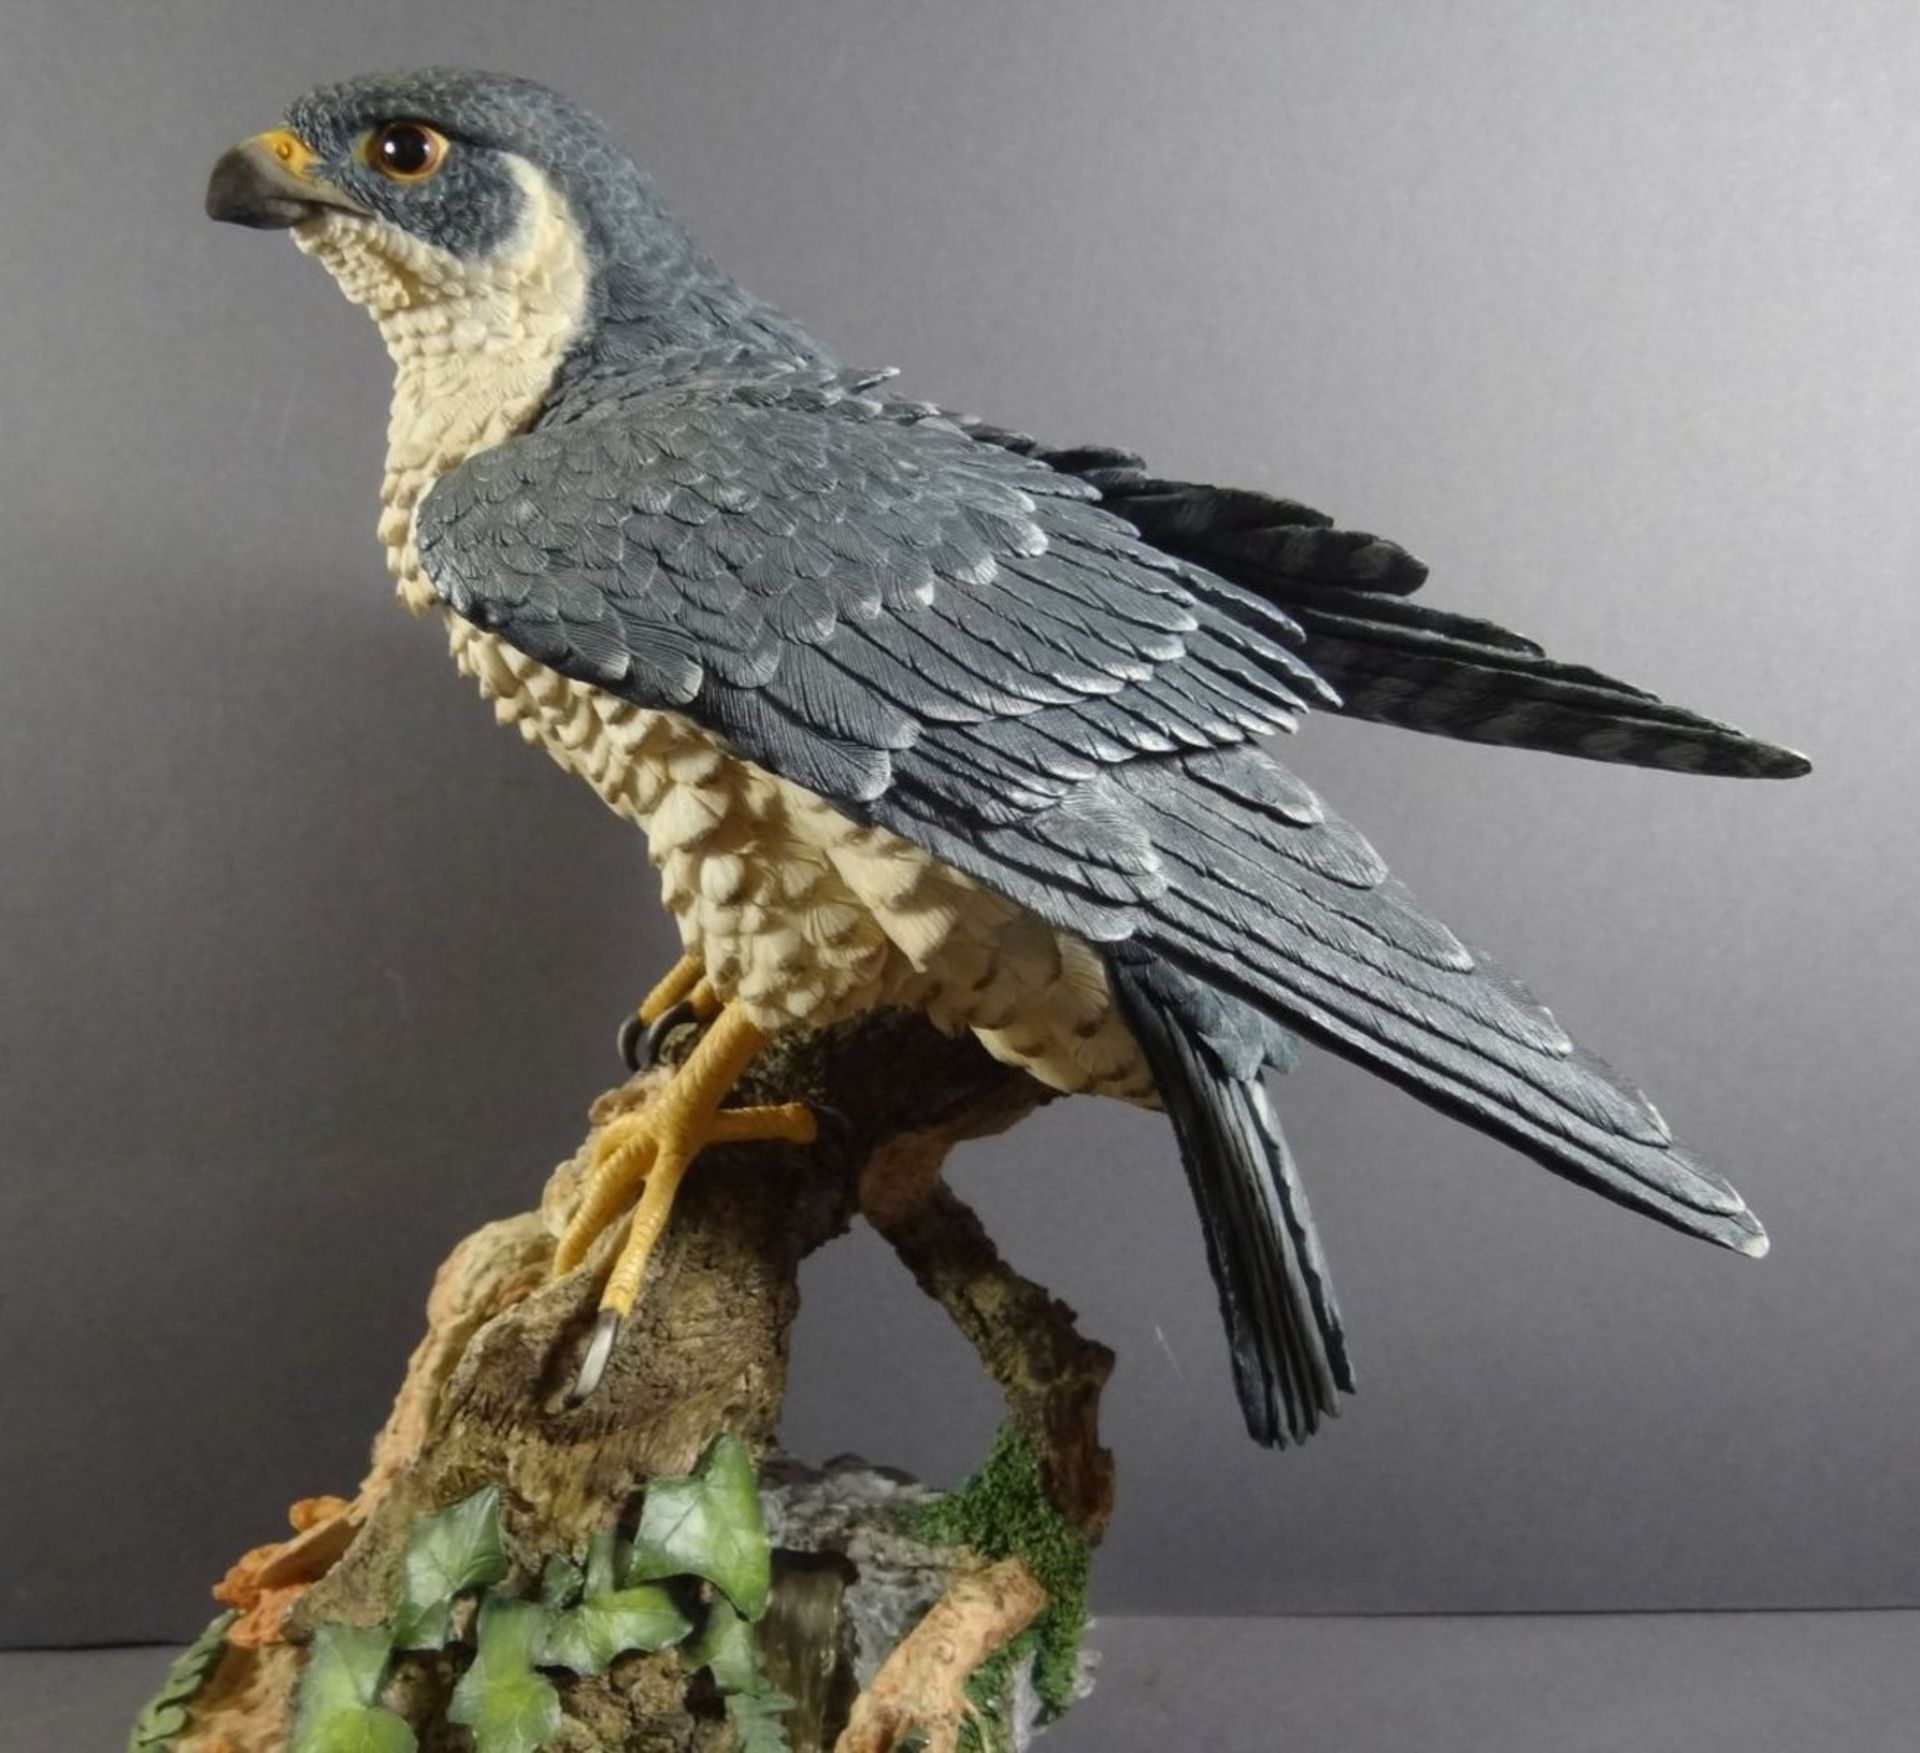 grosser Raubvogel von Goebel "Lord of the skies" handcrafted in England, H-40 cm, B-32 cm - Bild 7 aus 10